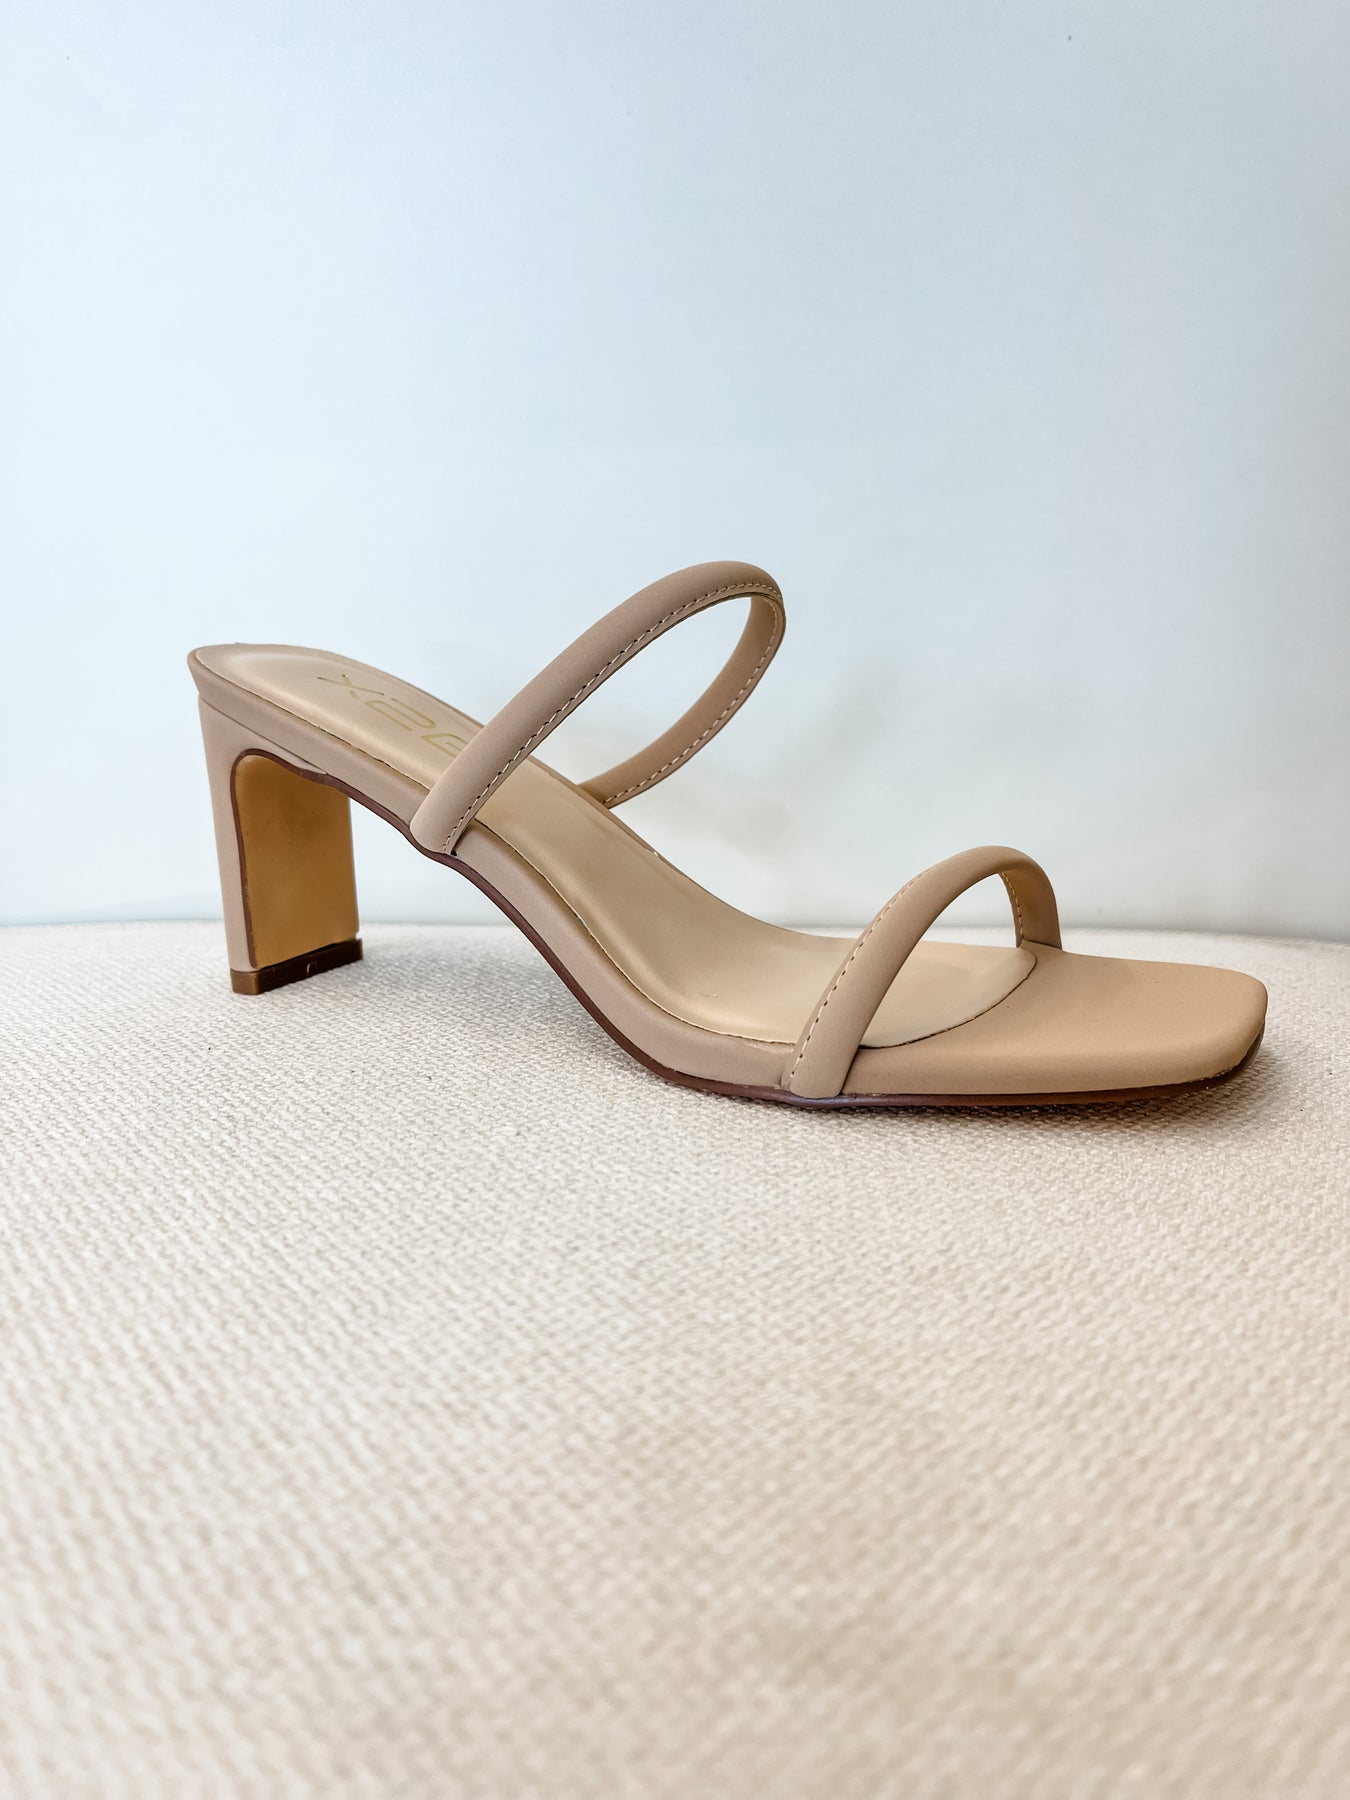 Metallic Thin Strap Stiletto Heeled Sandals | SHEIN IN